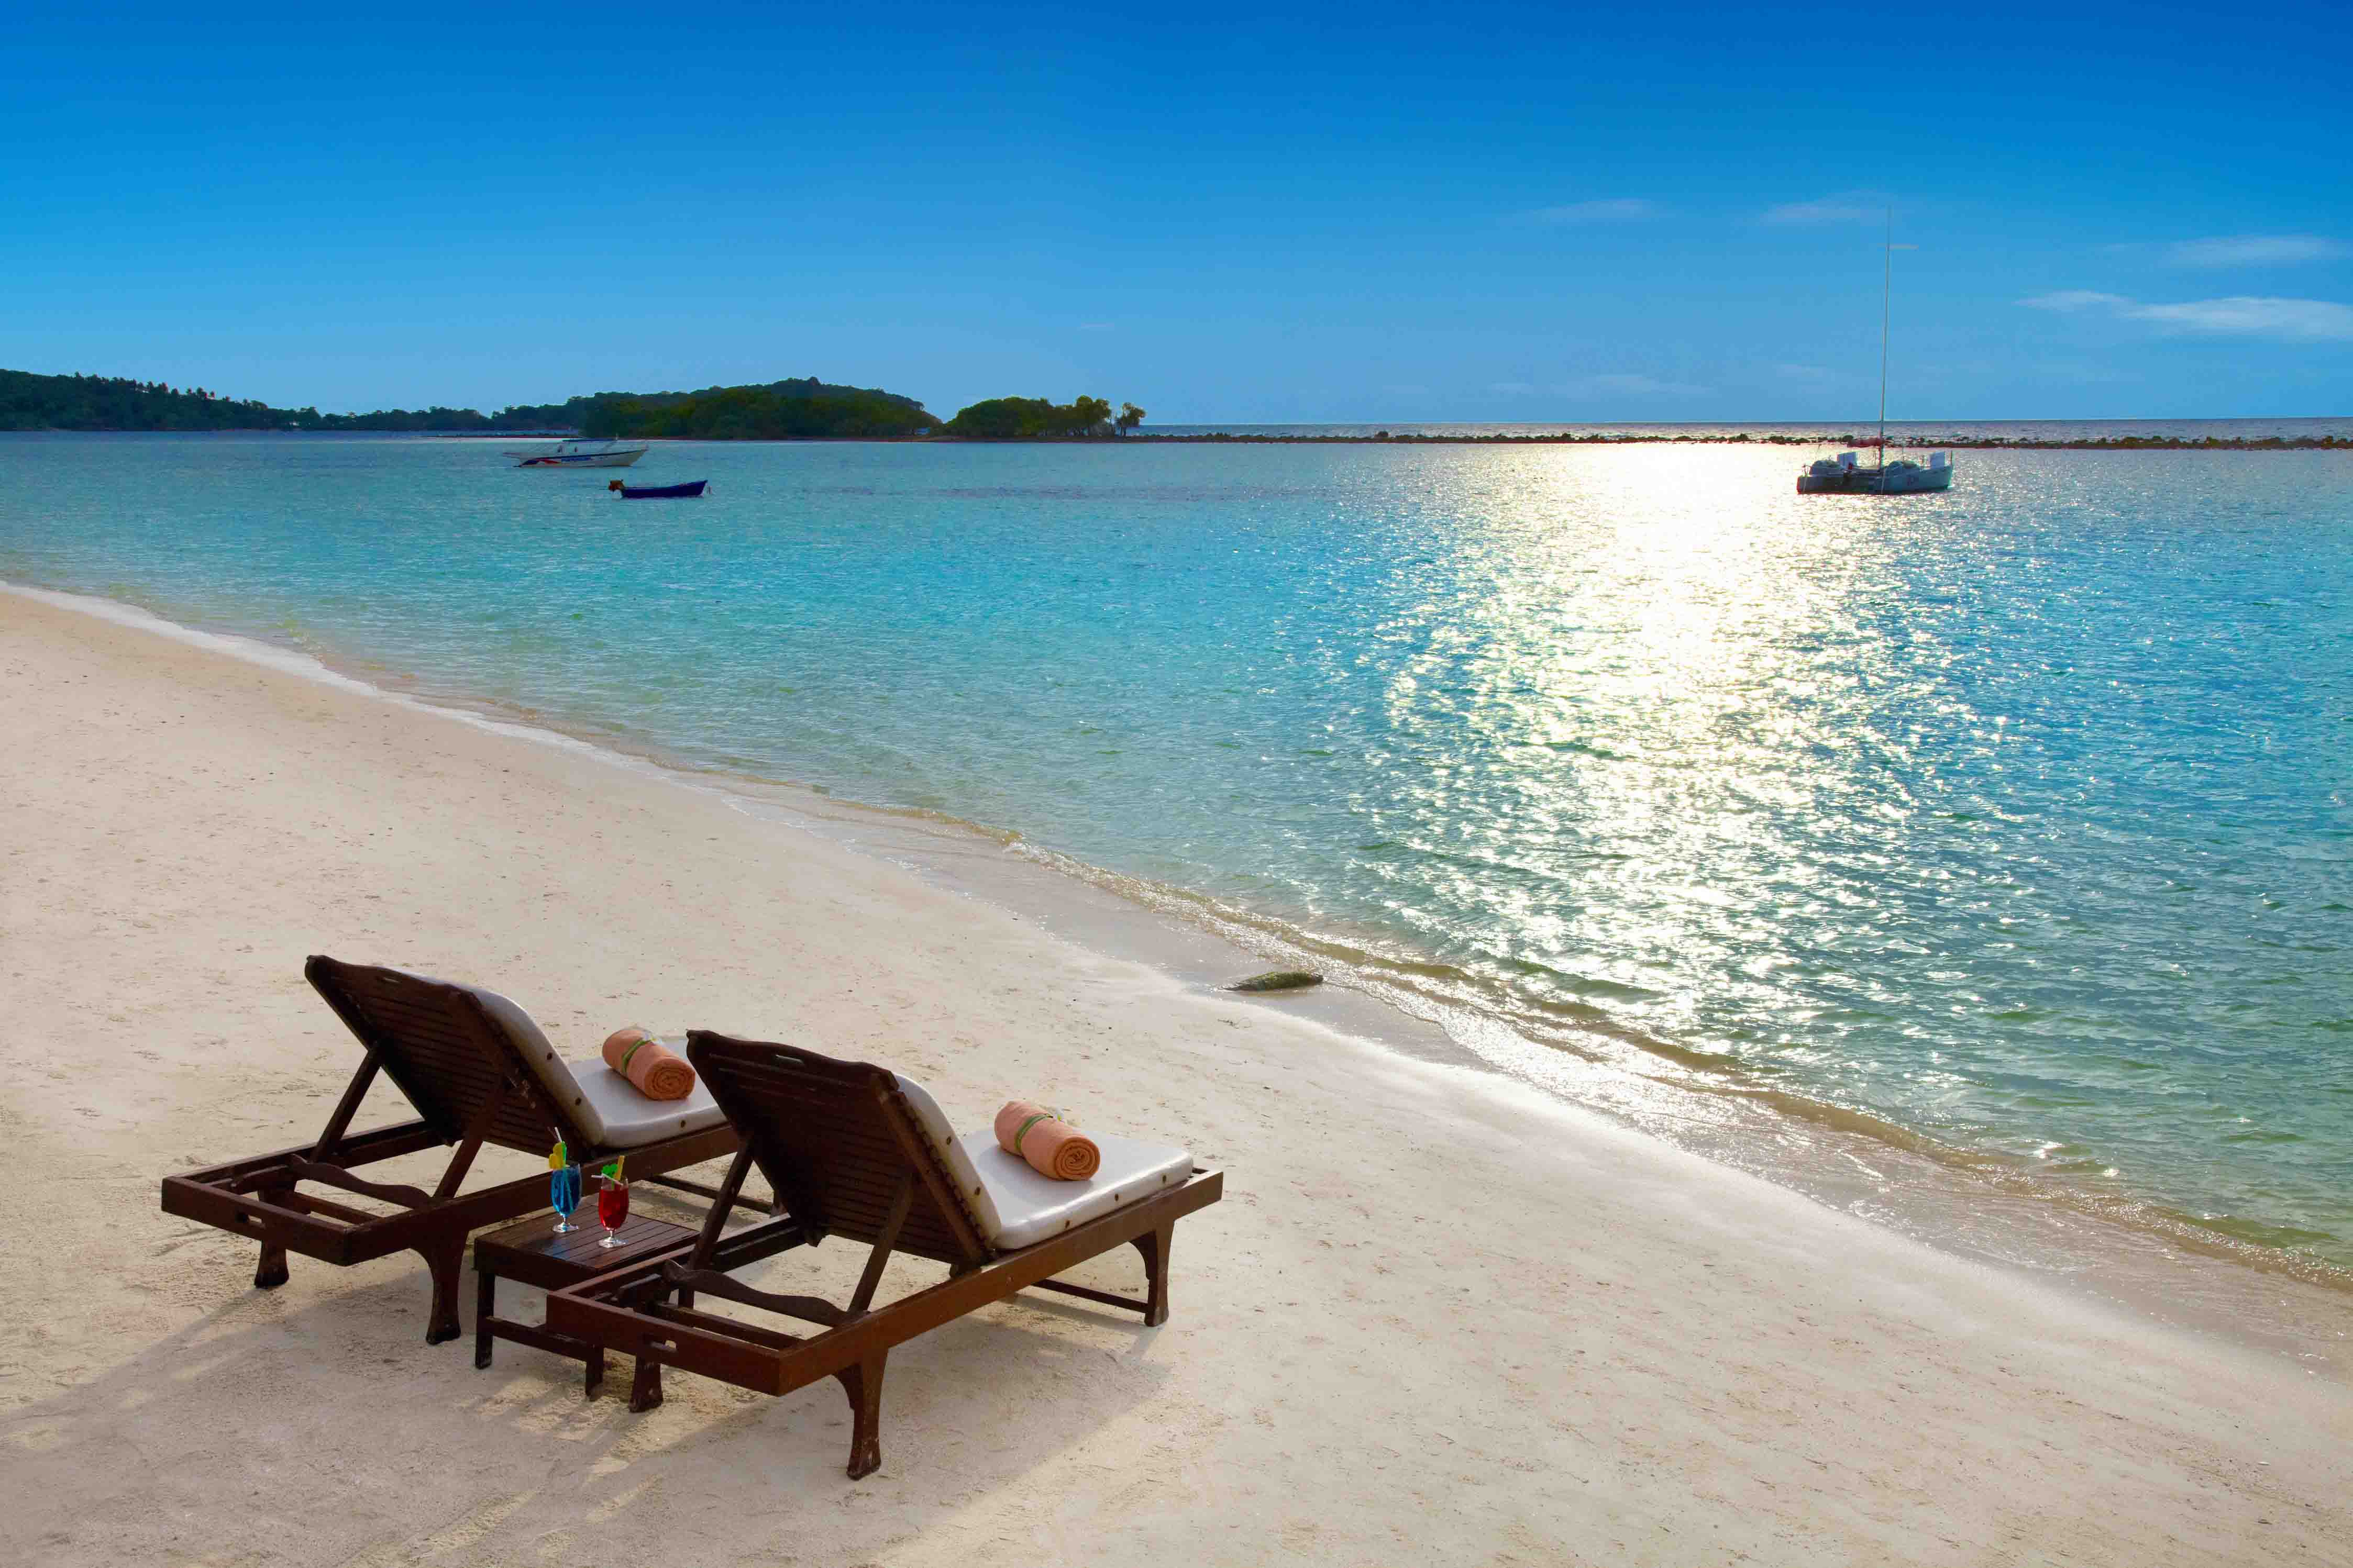 泰国苏梅岛 查汶丽晶海滩度假酒店chaweng-regent-beach-resort – 爱岛人 海岛旅行专家